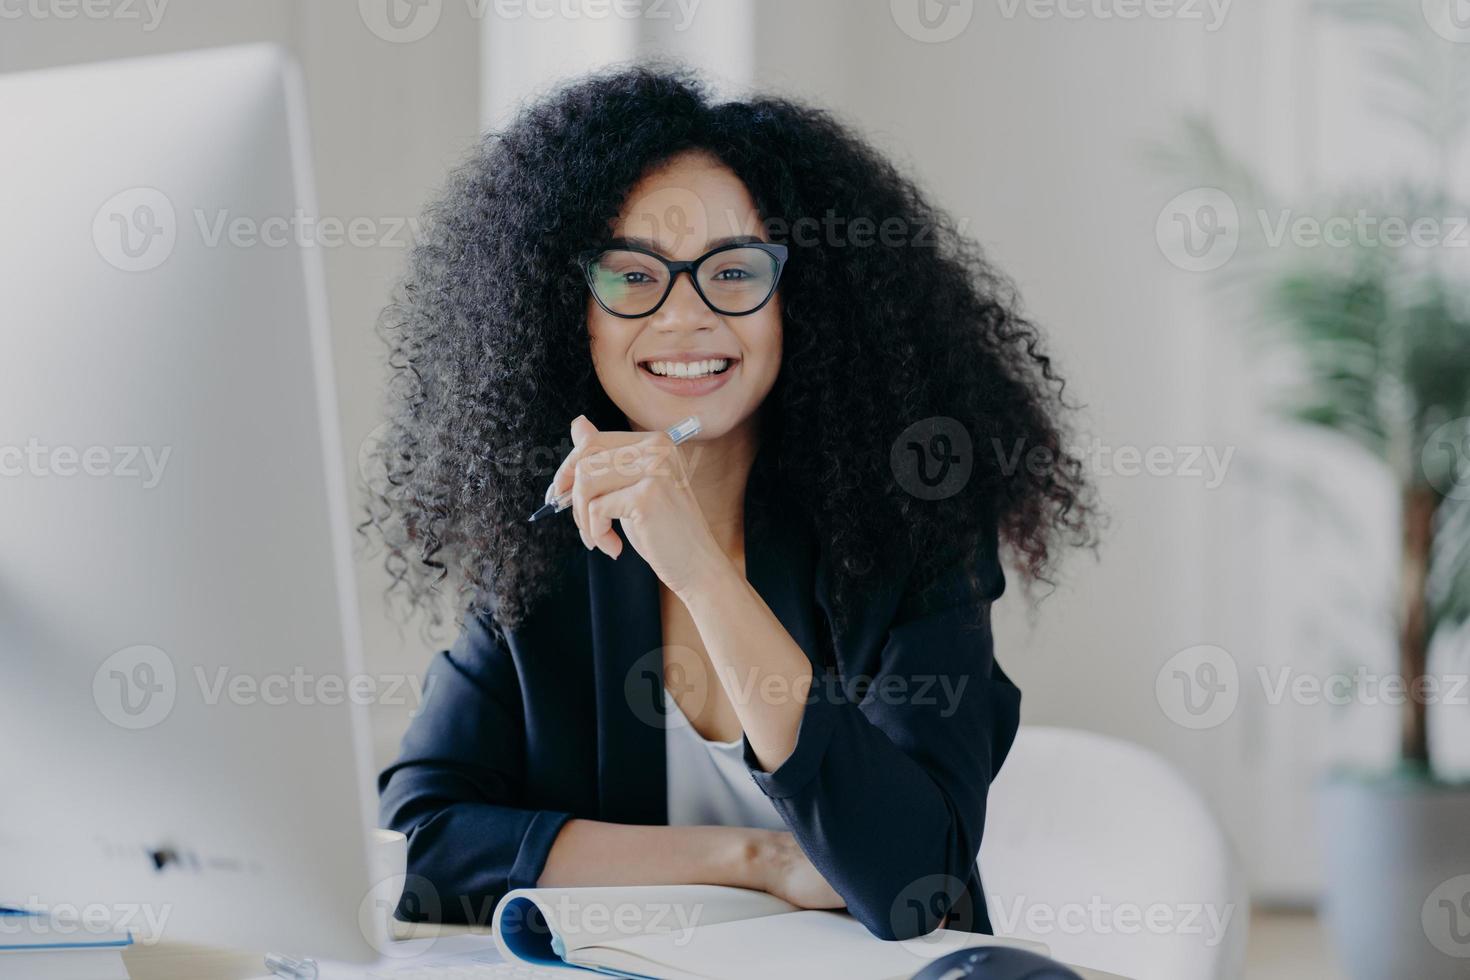 positive internationale studentin mit krausem haar, trägt durchsichtige brille, hält stift in der hand, macht buchhaltung, sitzt vor großem computerbildschirm, gekleidet in schwarzes elegantes outfit. foto